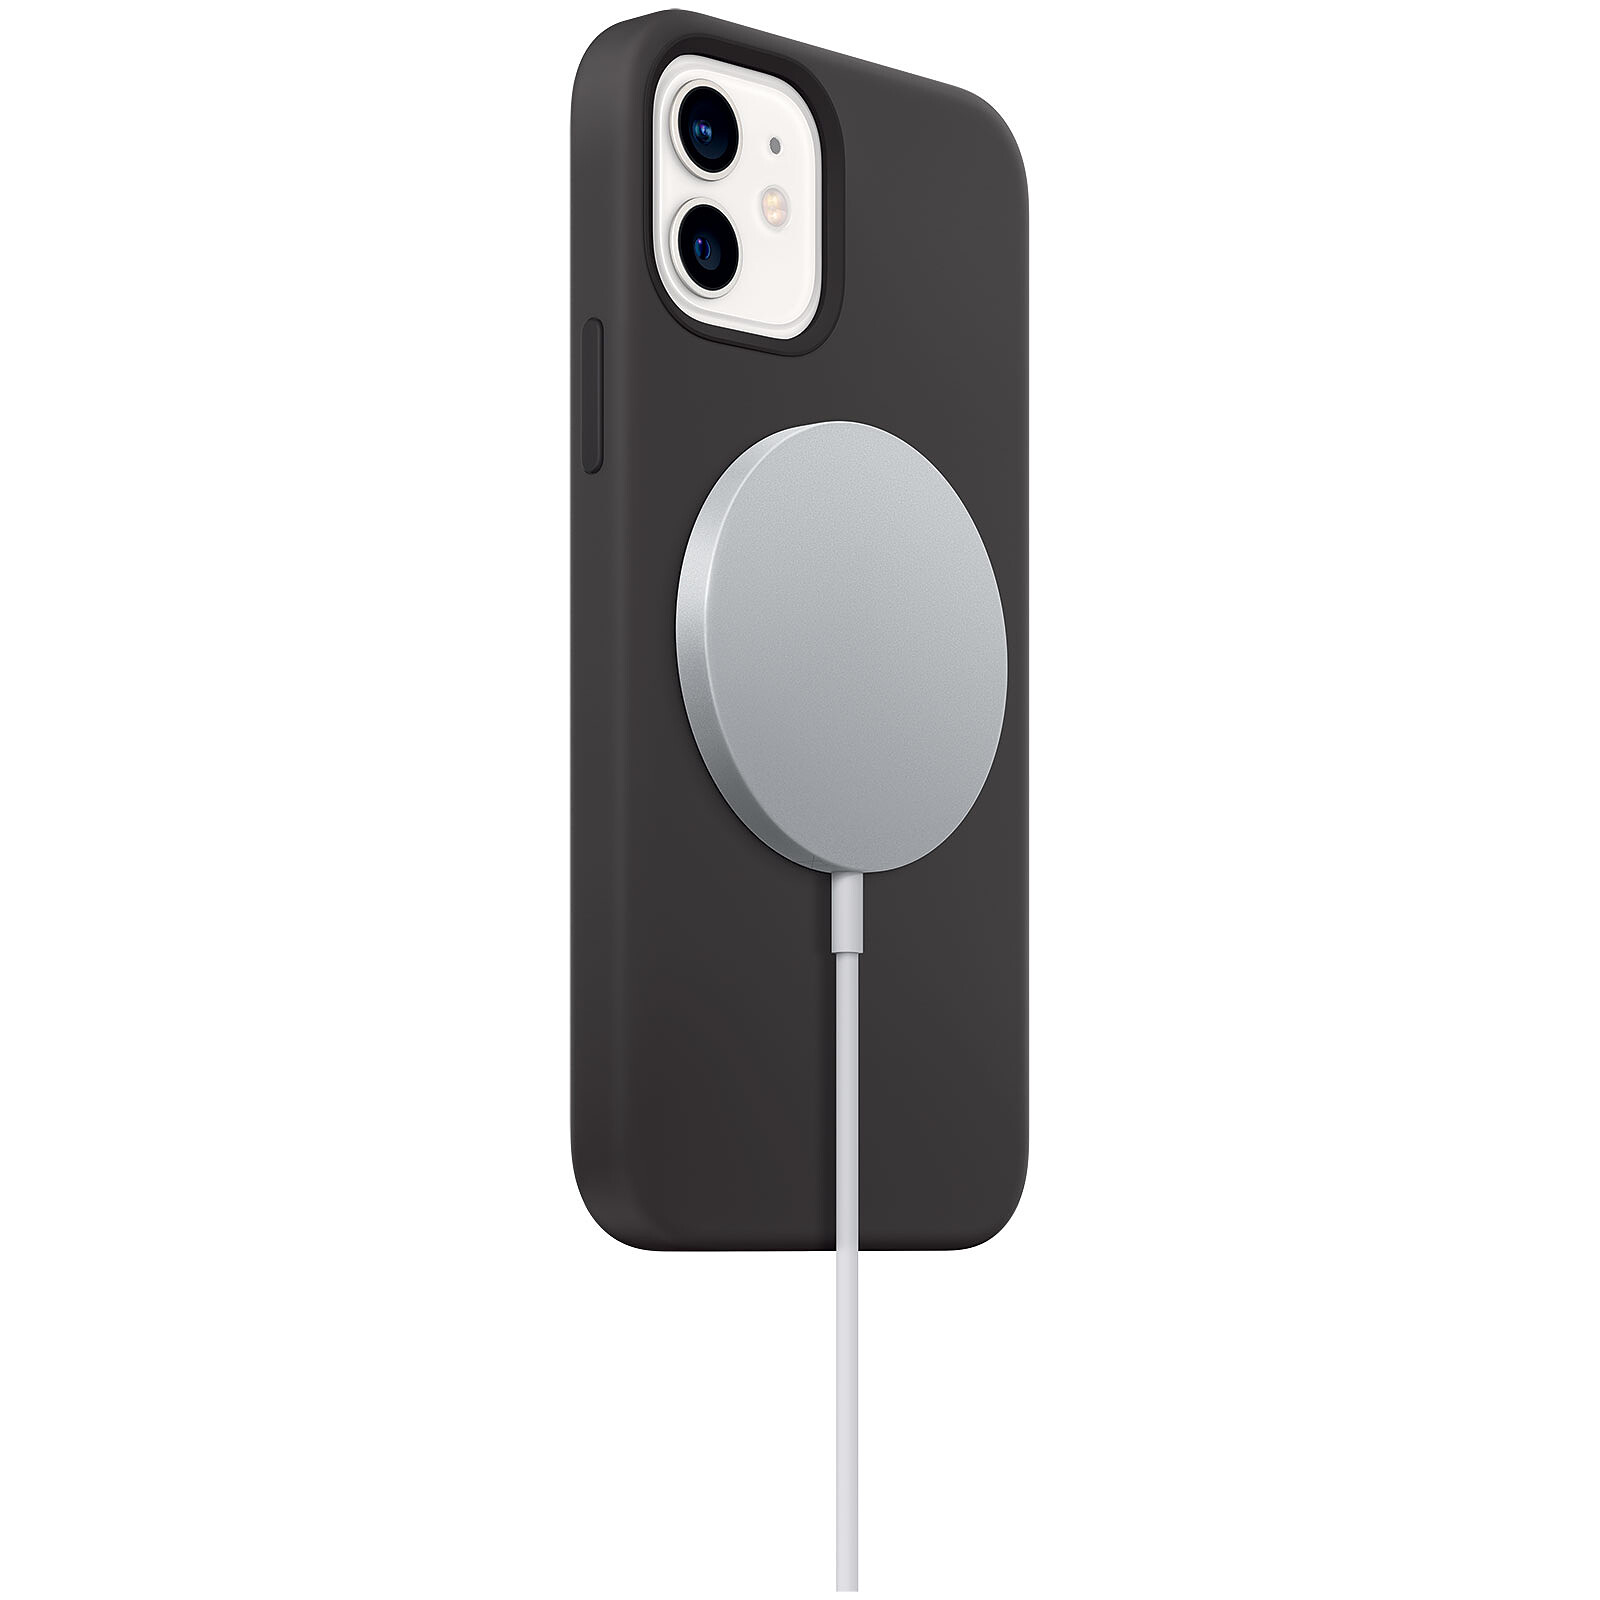 Test du chargeur sans fil 3-en-1 pour iPhone, Apple Watch et AirPods  d'XtremeMac